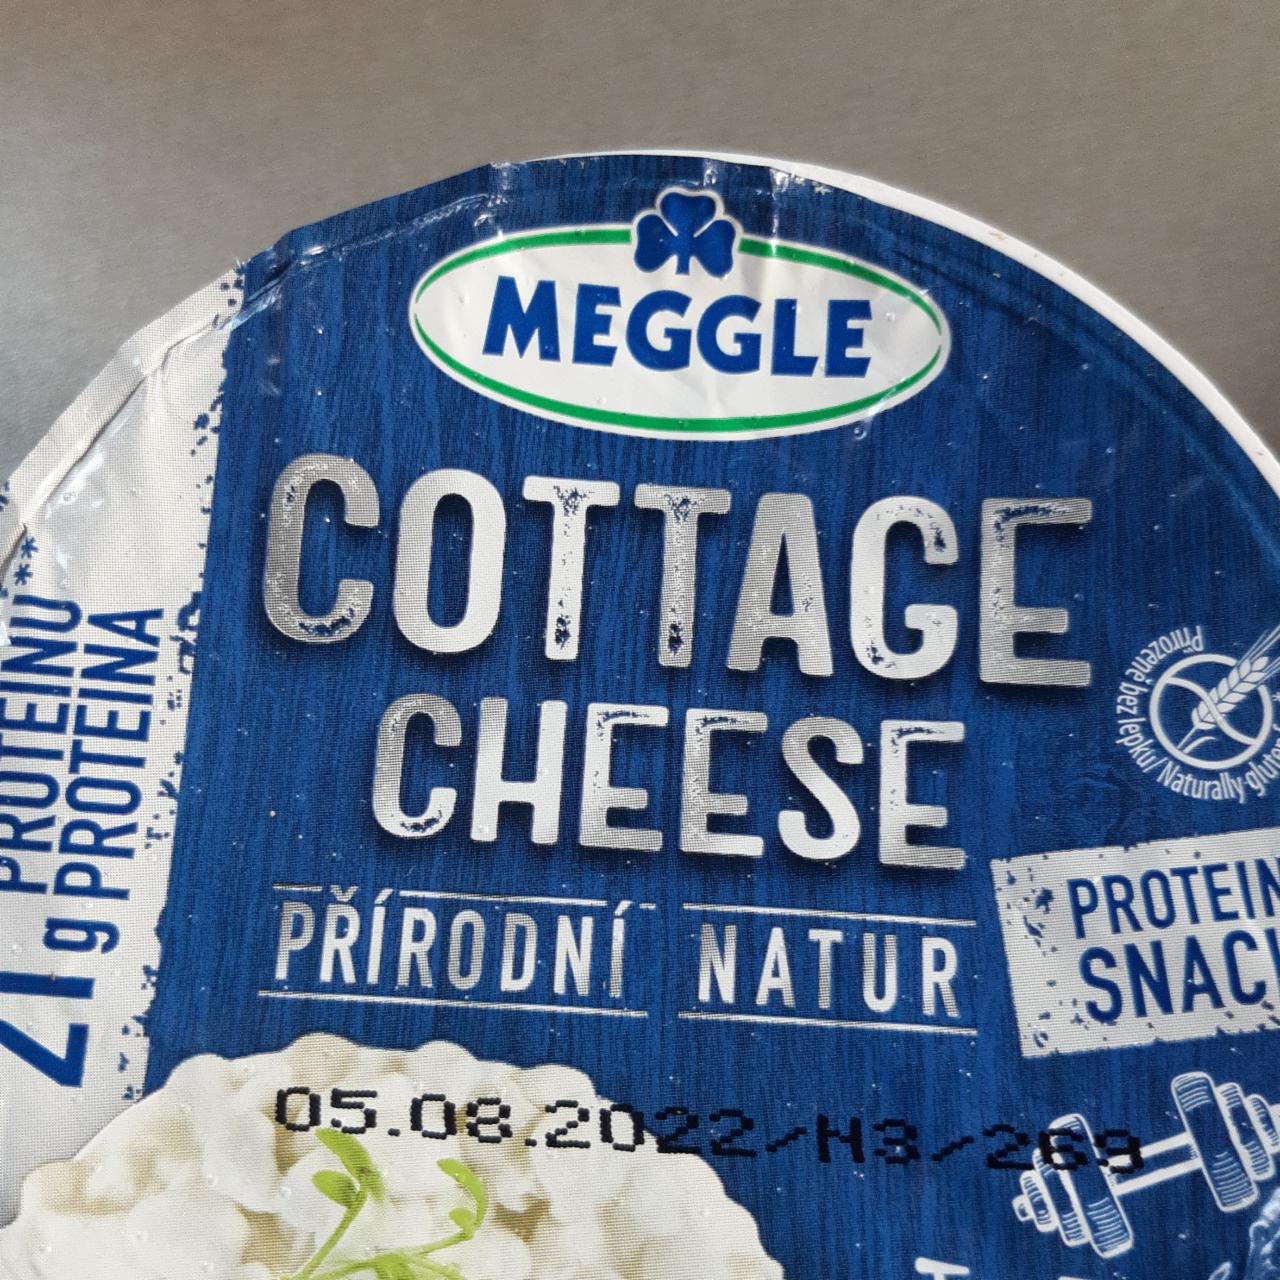 Fotografie - Cottage cheese přírodní natur Meggle